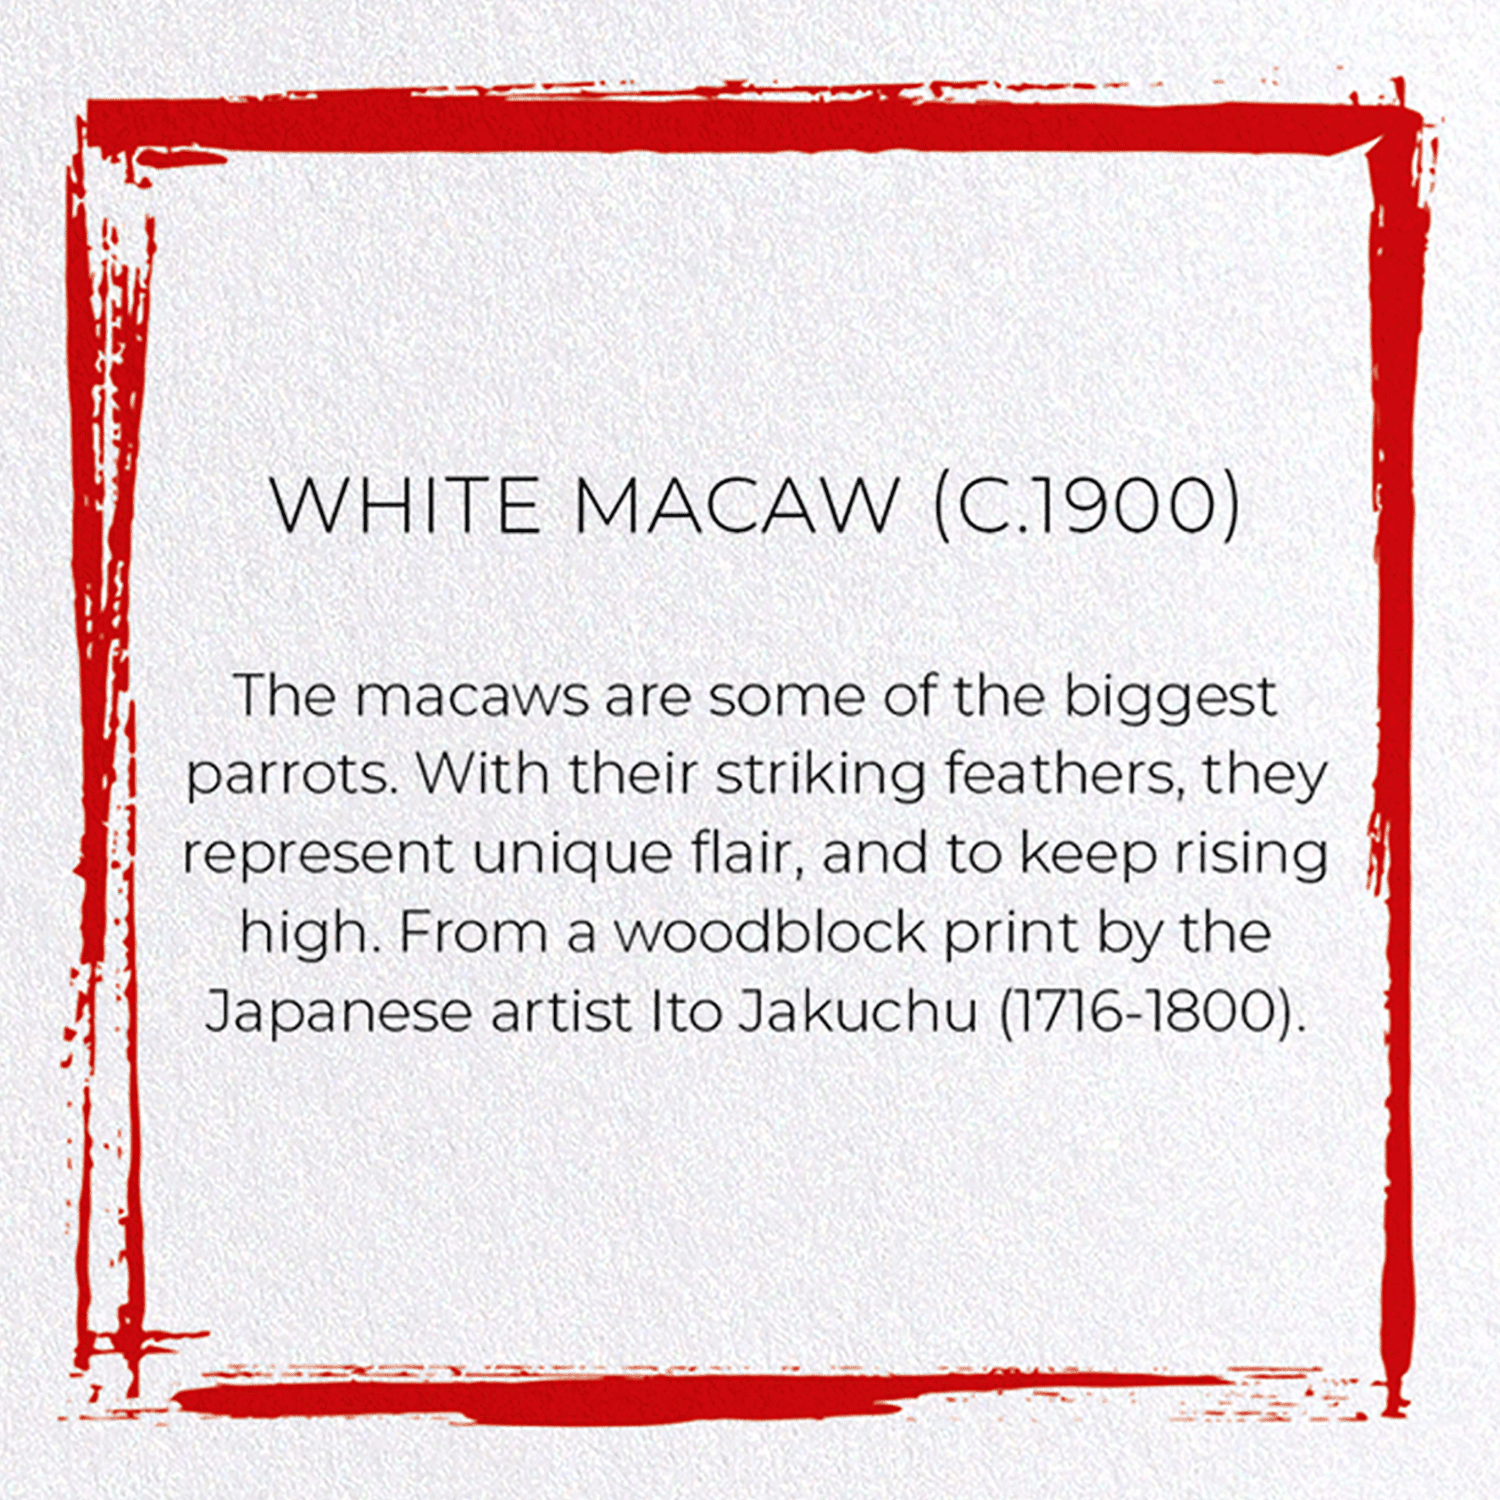 WHITE MACAW (C.1900)